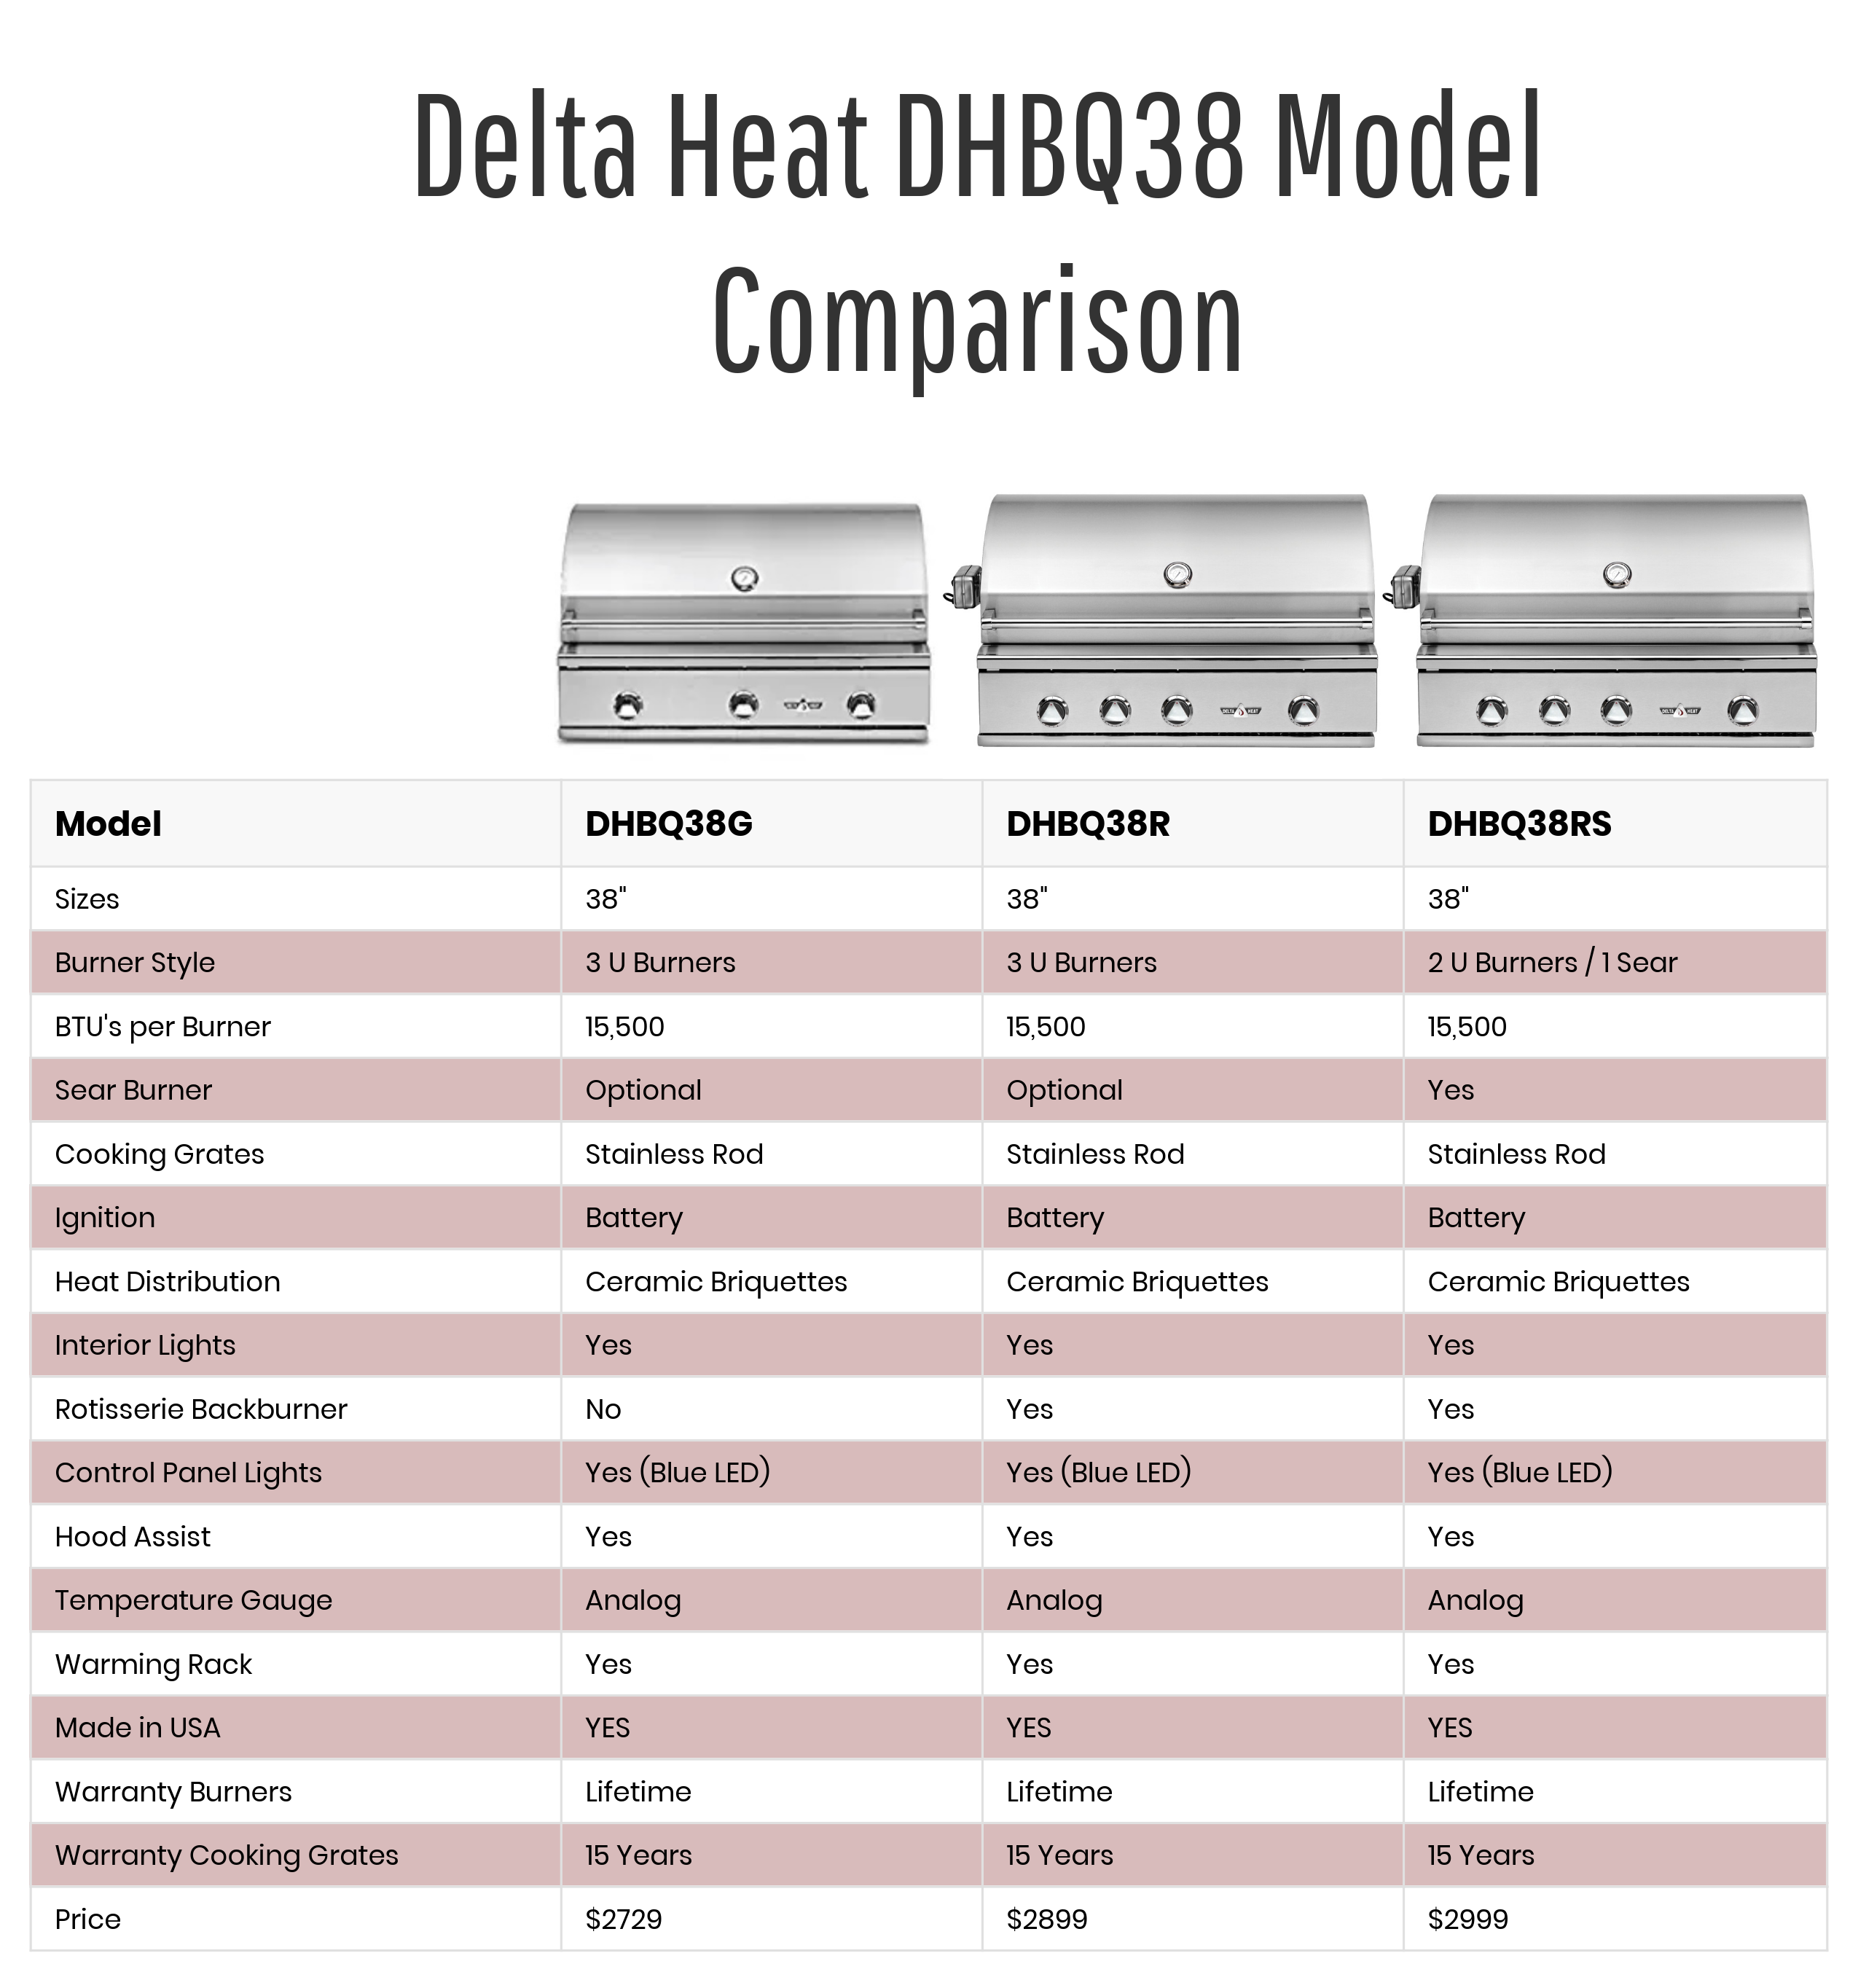 Delta Heat DHBQ38 Grill Model Comparison